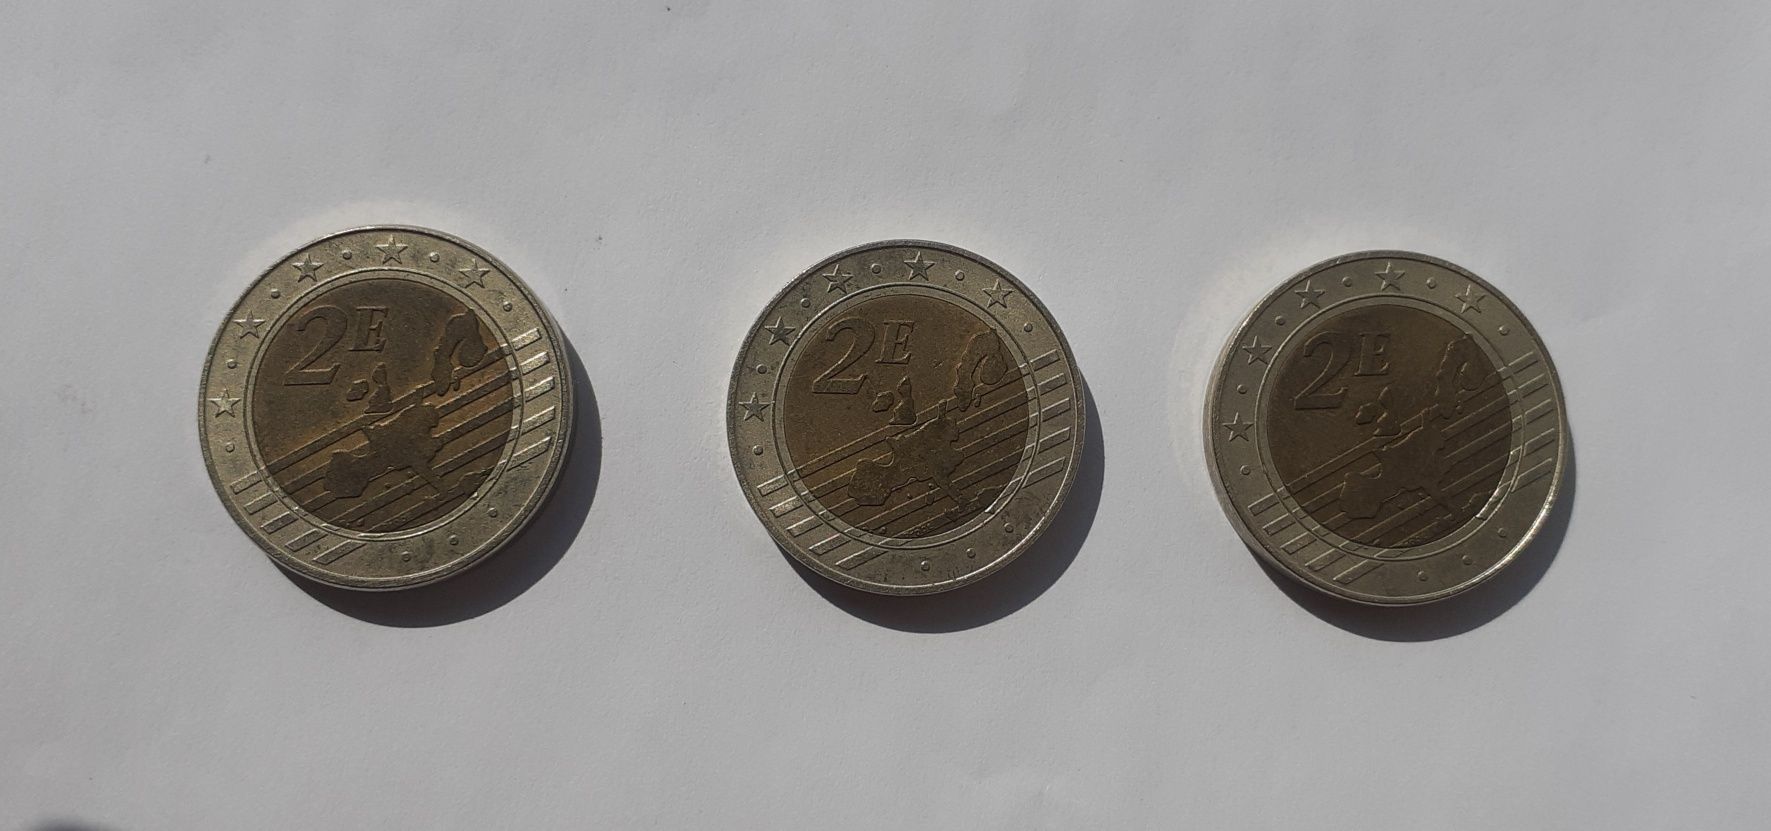 Probe monetare 2 € Slovenia 2007, Malta 2008, Cipru 2008 - rare